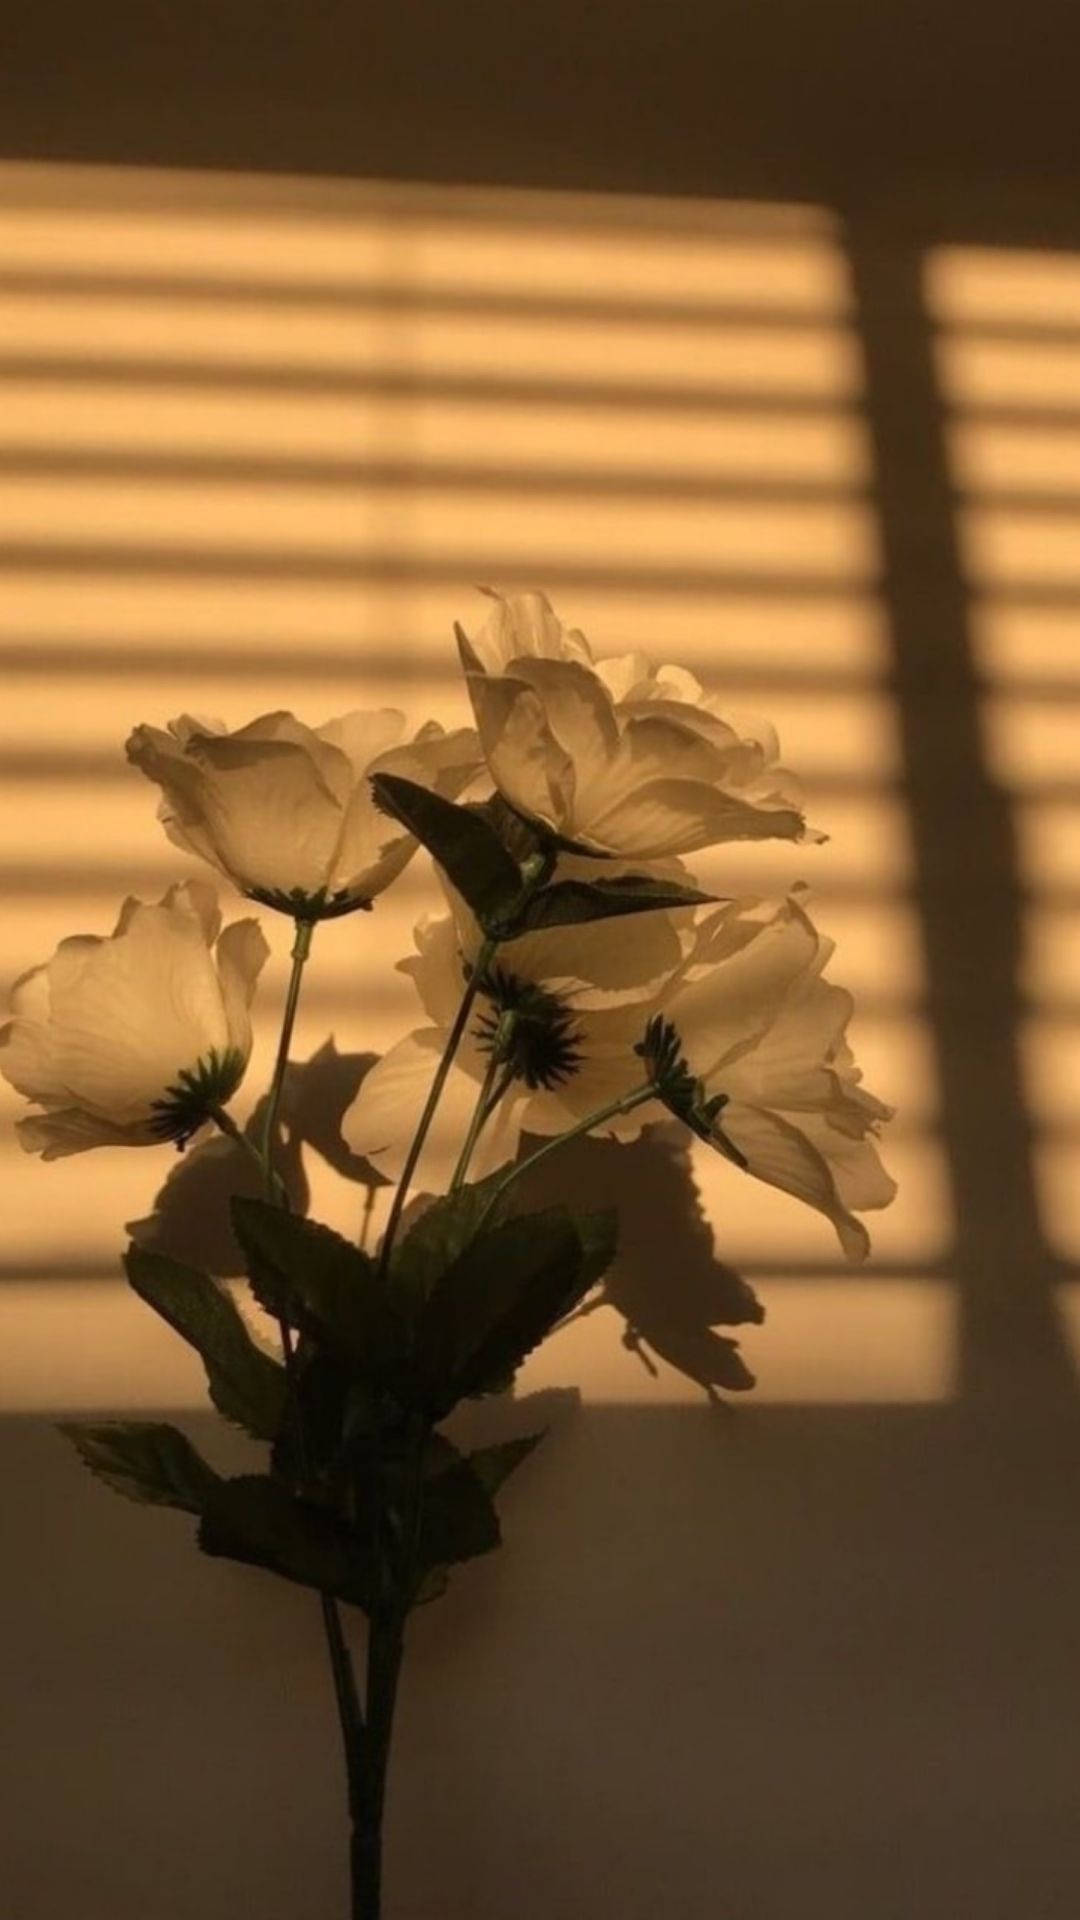 Flower Aesthetic In Sunlight